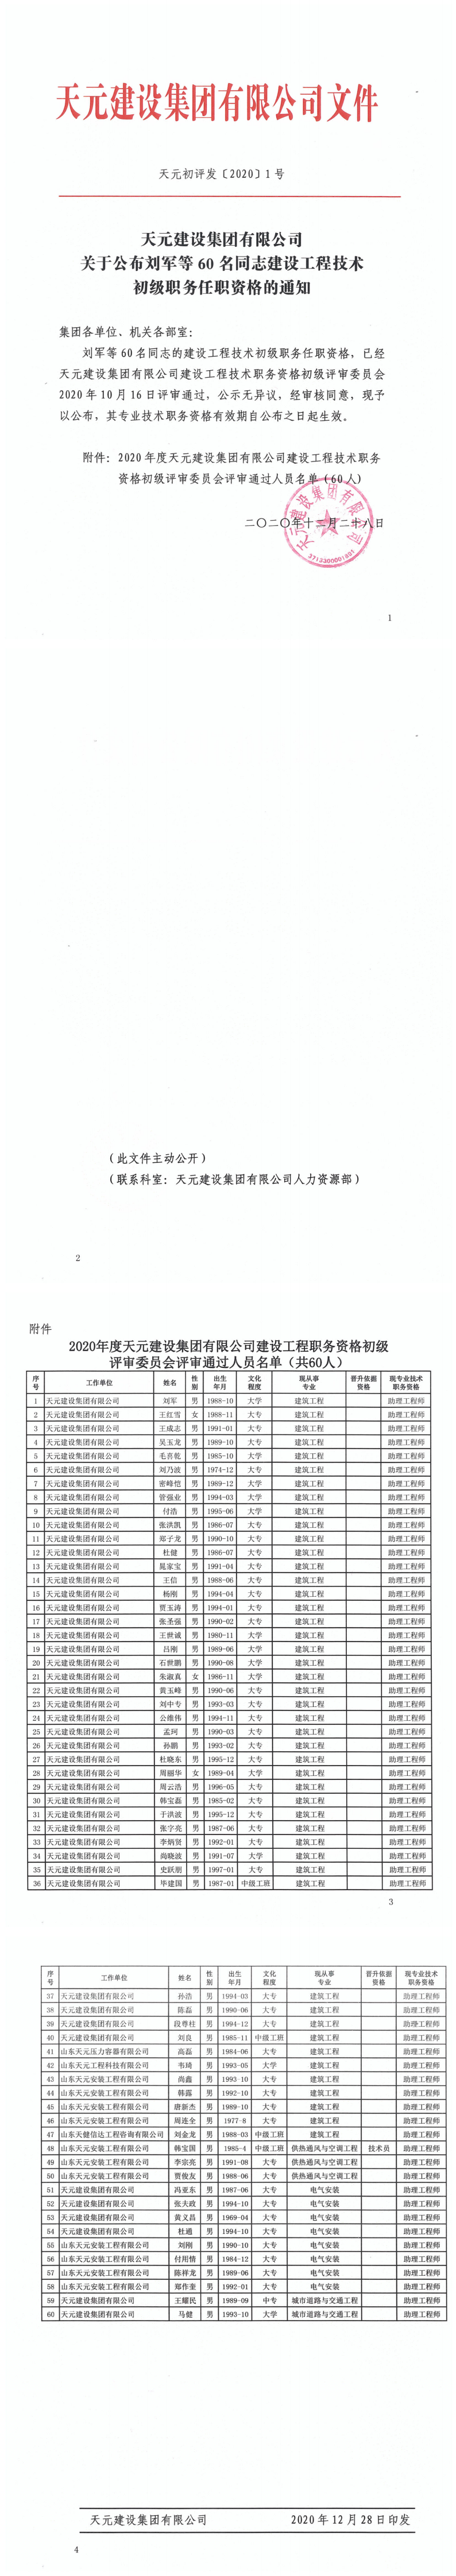 關于公布劉軍等60名同志建設工程技術初級職務任職資格的通知(圖1)